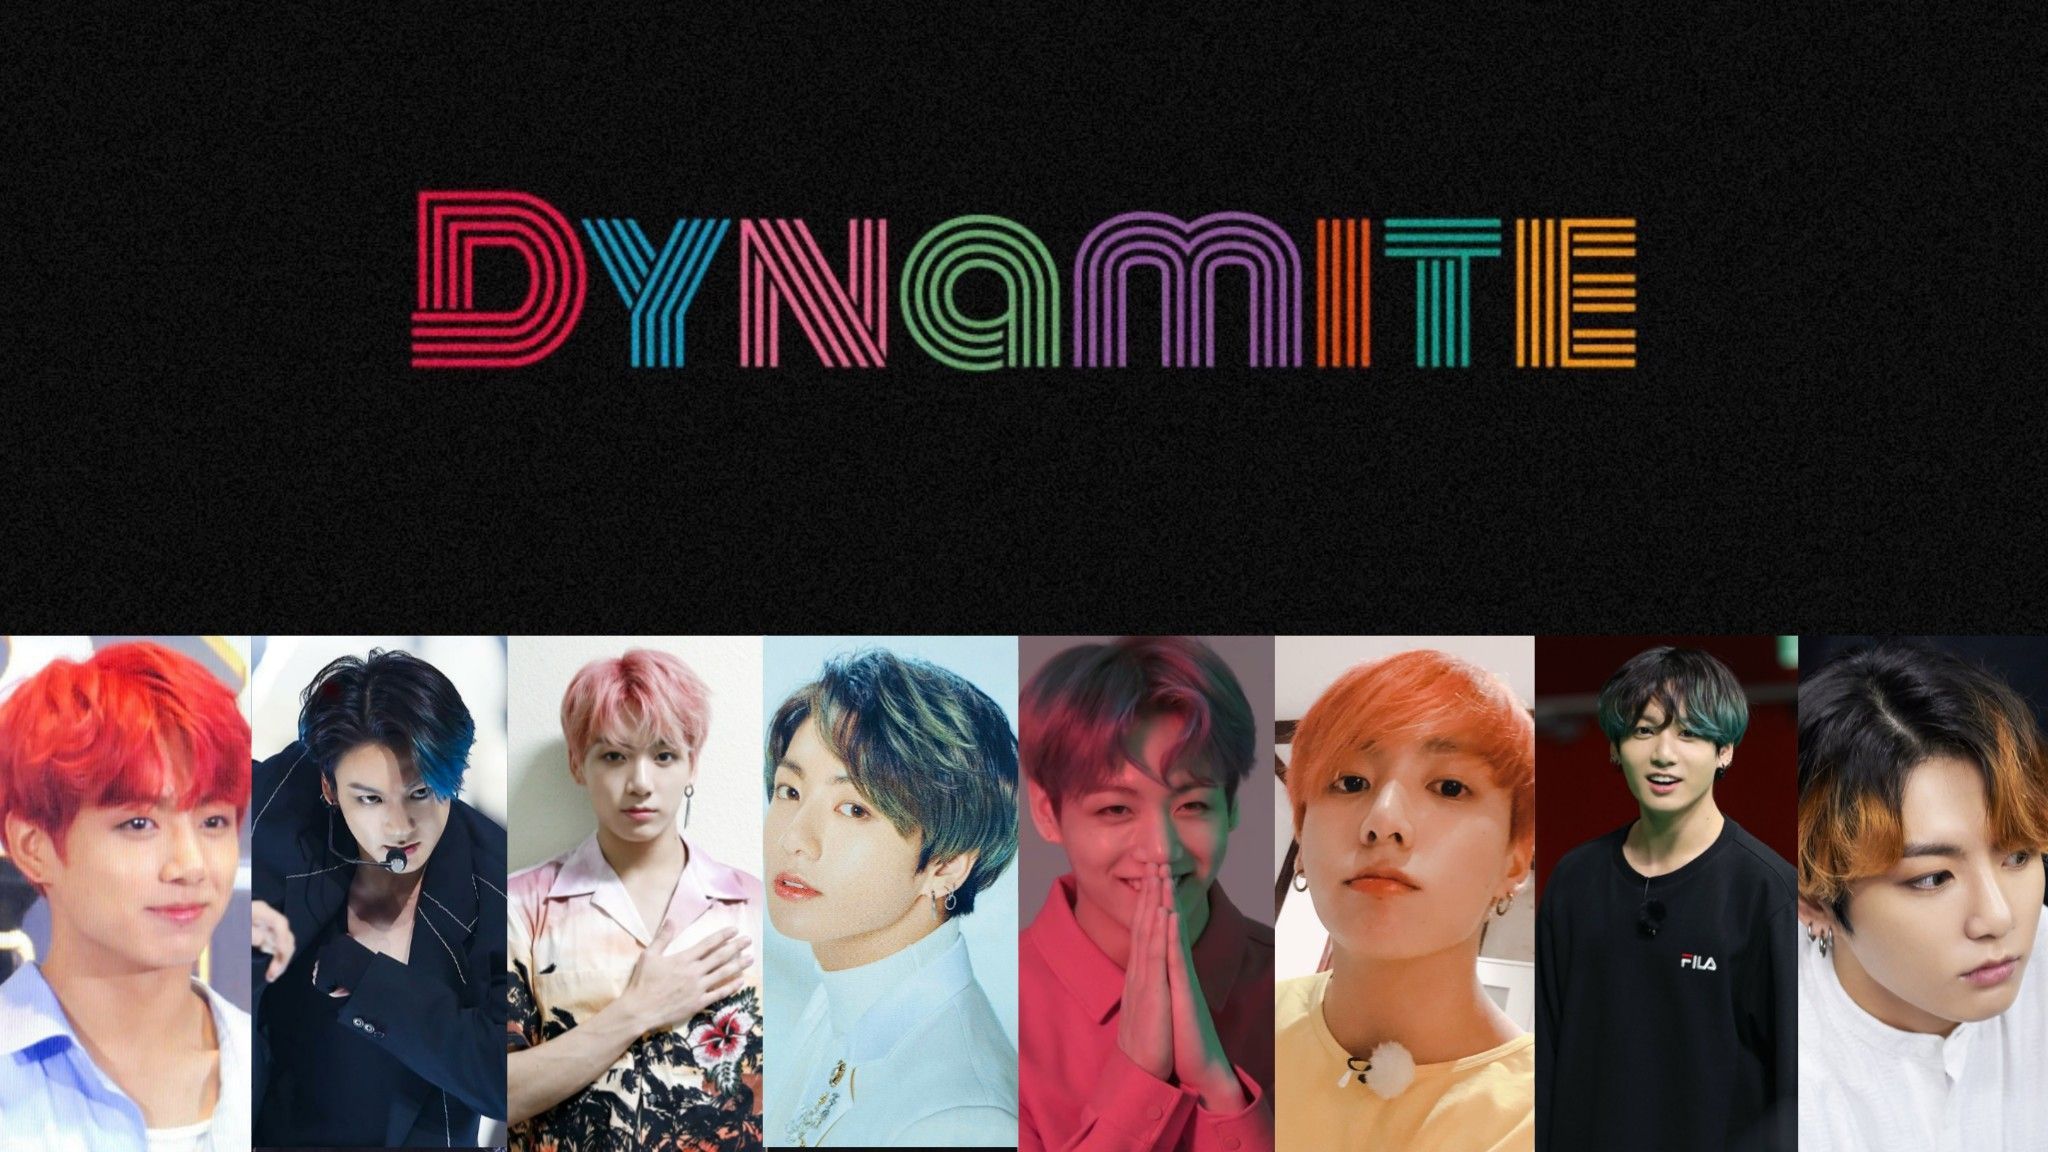 BTS JK as Dynamite. Electronics, Dynamite, Electronic